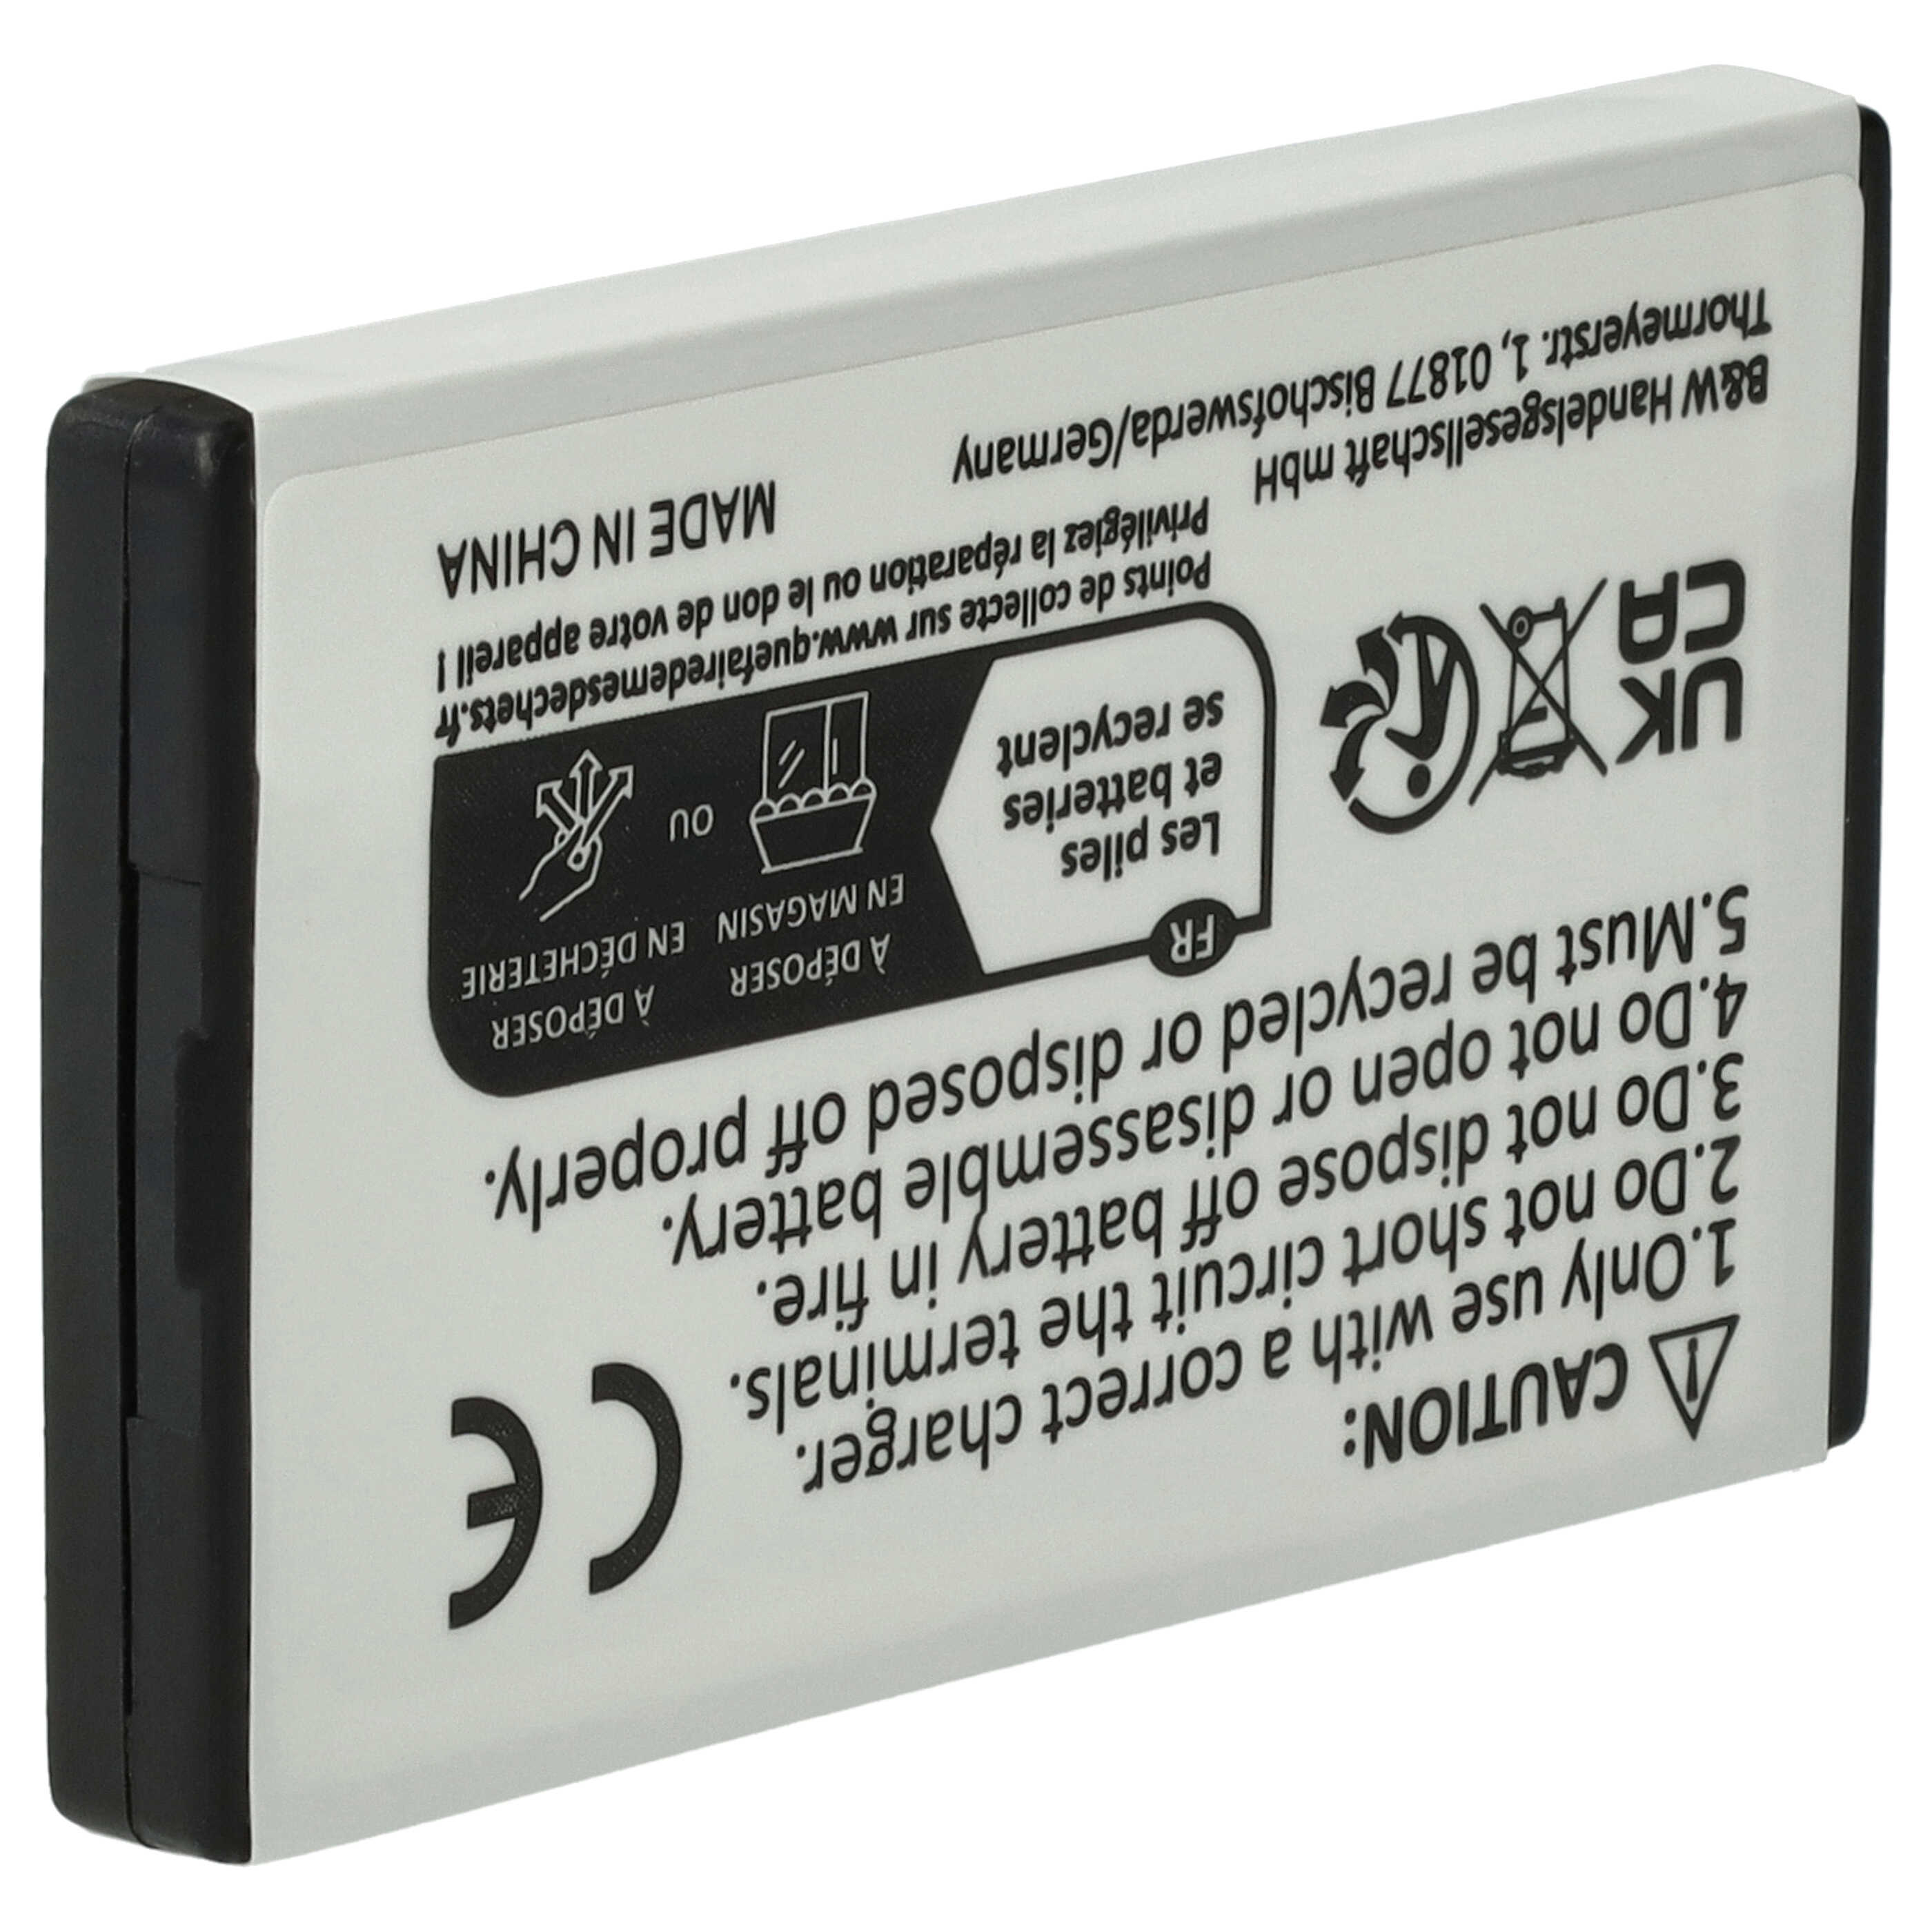 Batteria per console di gioco sostituisce Nintendo NTR-003, NTR-001 - 800mAh, 3,7V